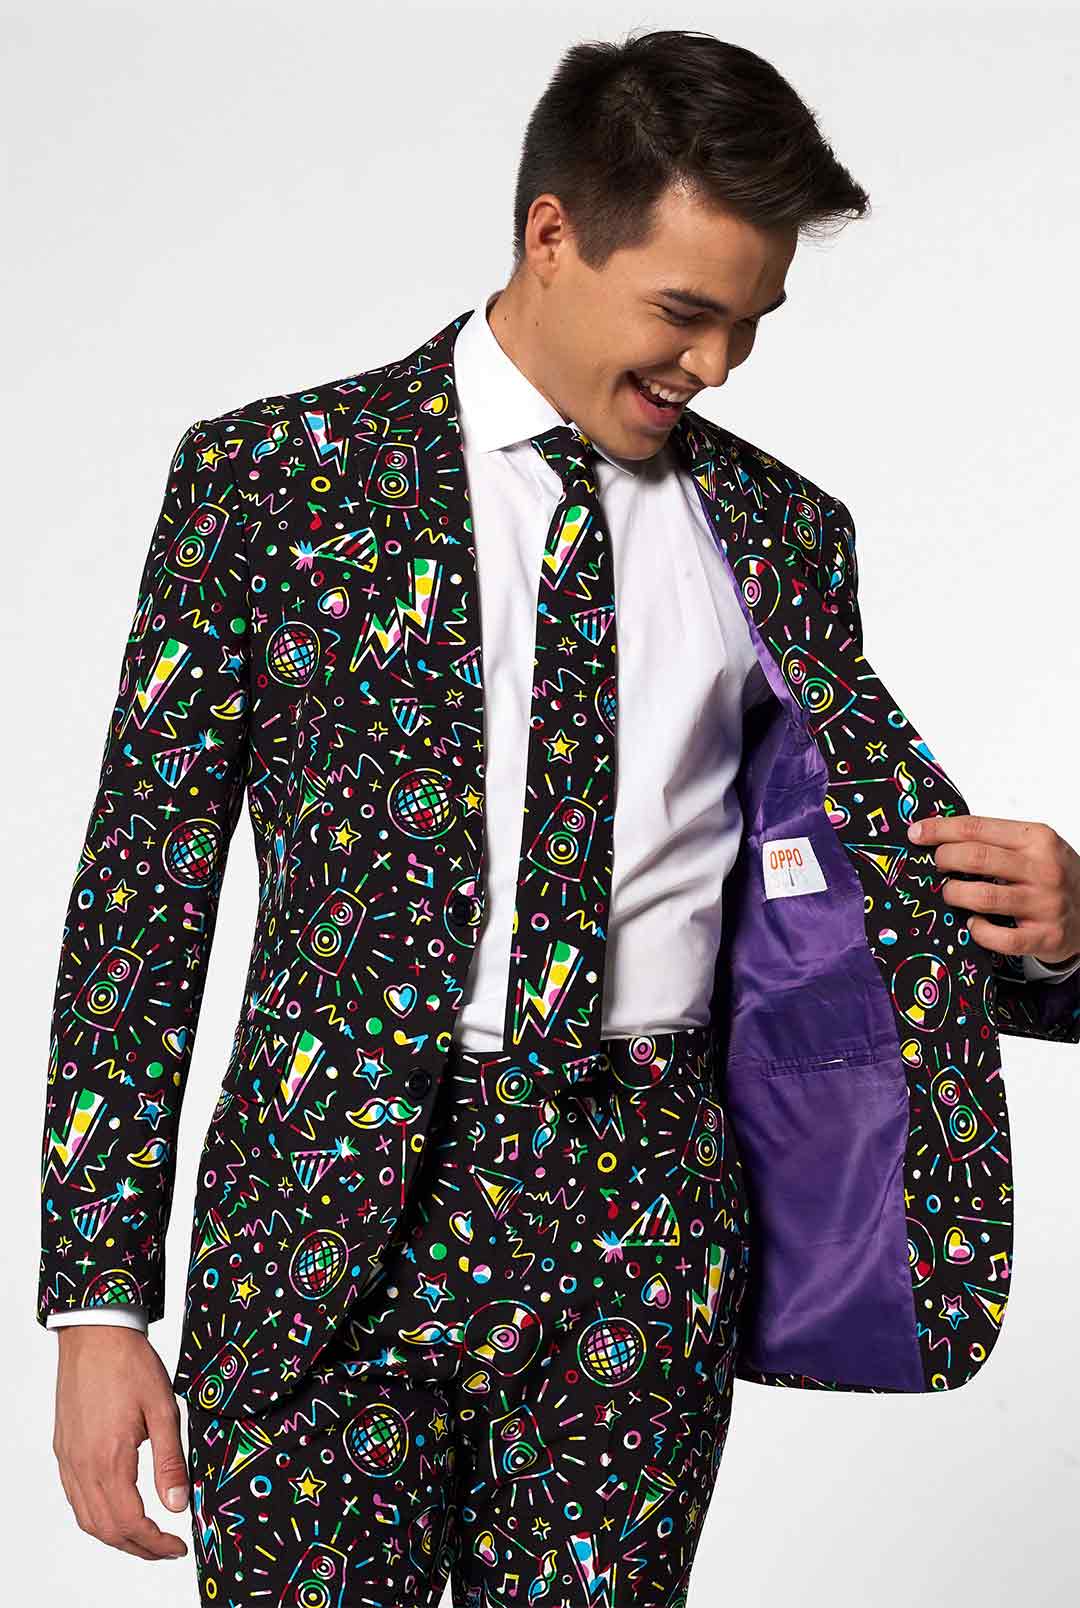 Disco Suit, Men's Party Outfit